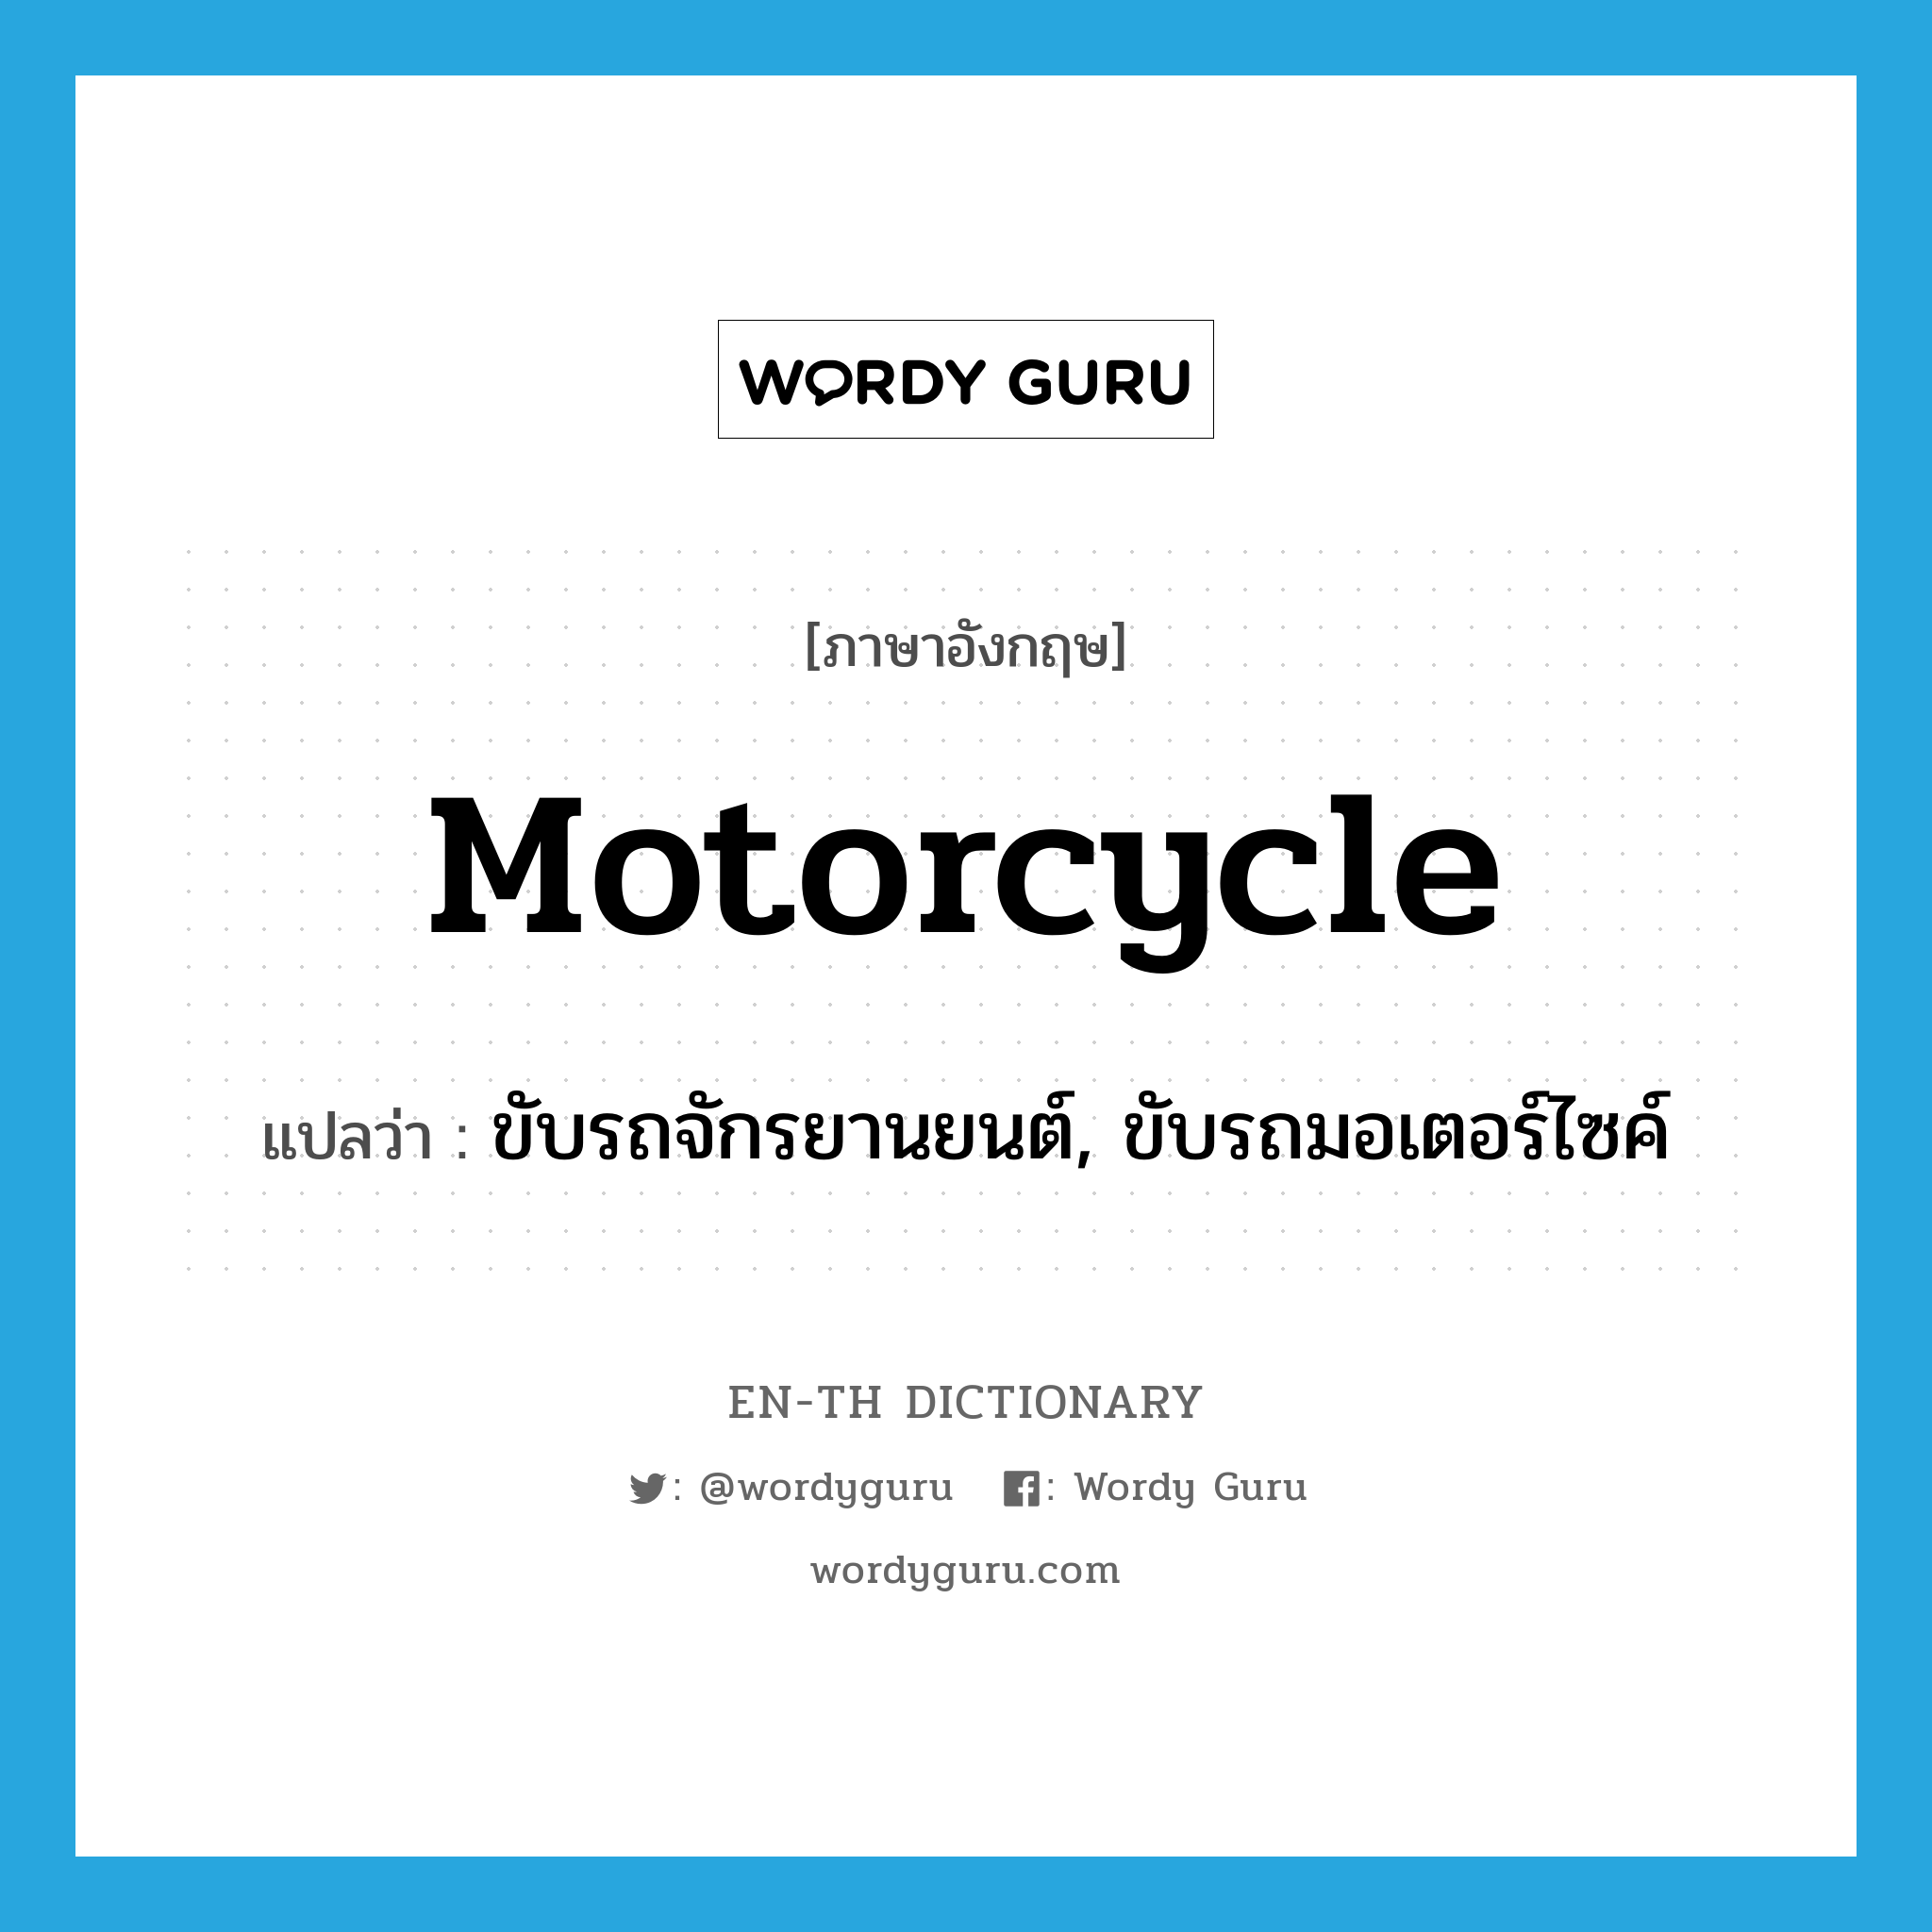 ขับรถจักรยานยนต์, ขับรถมอเตอร์ไซค์ ภาษาอังกฤษ?, คำศัพท์ภาษาอังกฤษ ขับรถจักรยานยนต์, ขับรถมอเตอร์ไซค์ แปลว่า motorcycle ประเภท VI หมวด VI